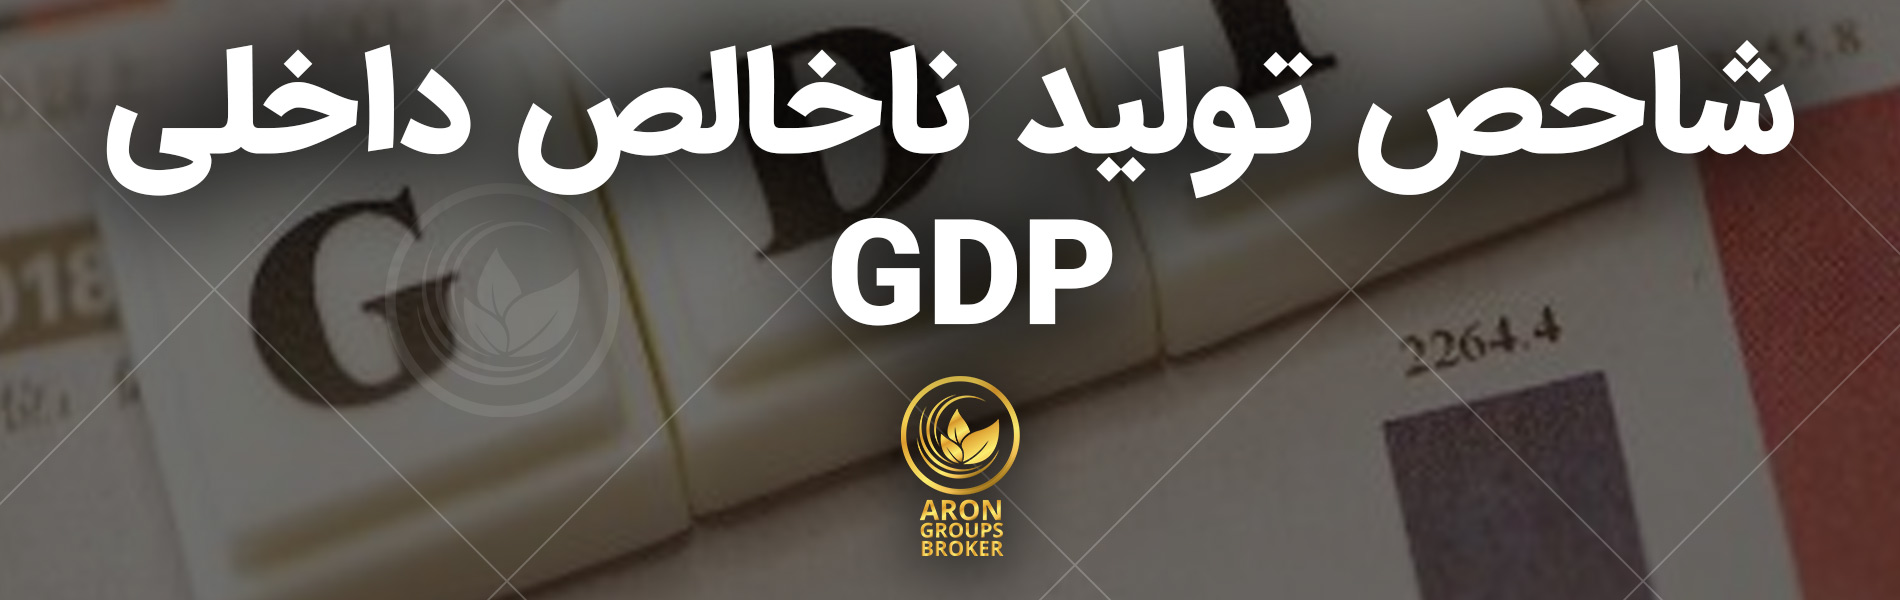 تولید ناخالص داخلی GDP چیست؟